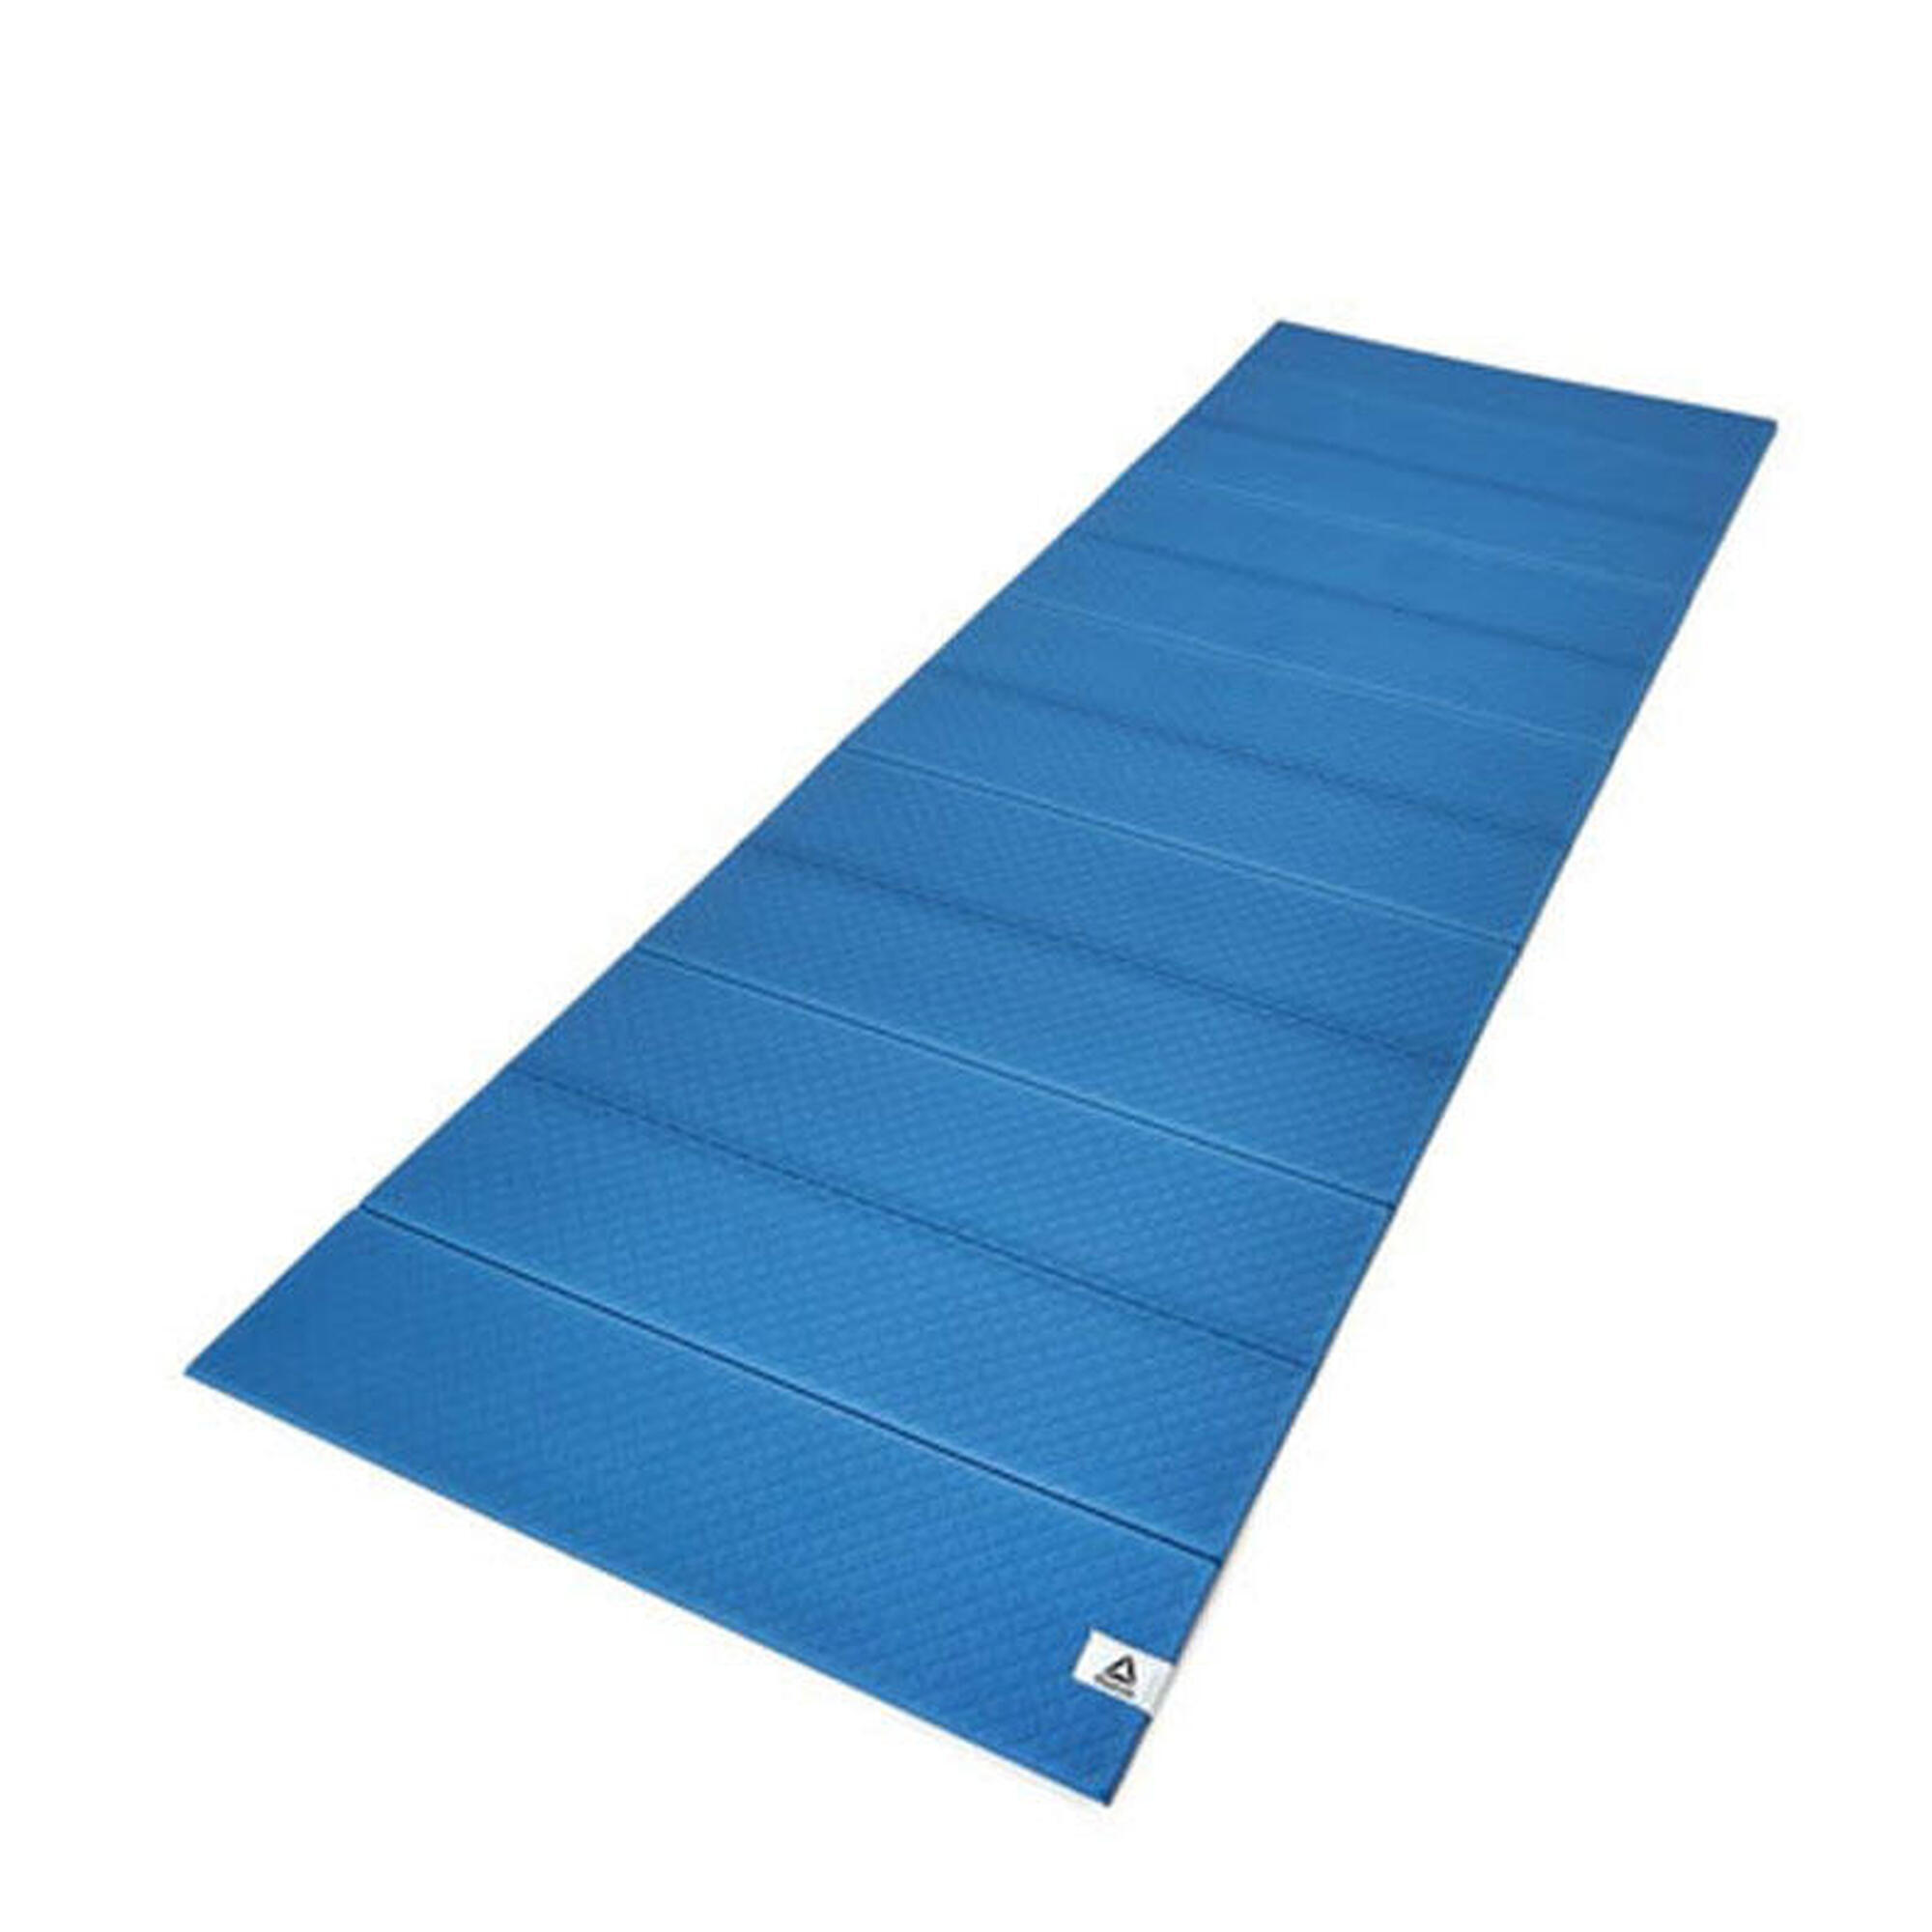 Esterilla de Yoga Plegable Reebok - 6mm - Azul